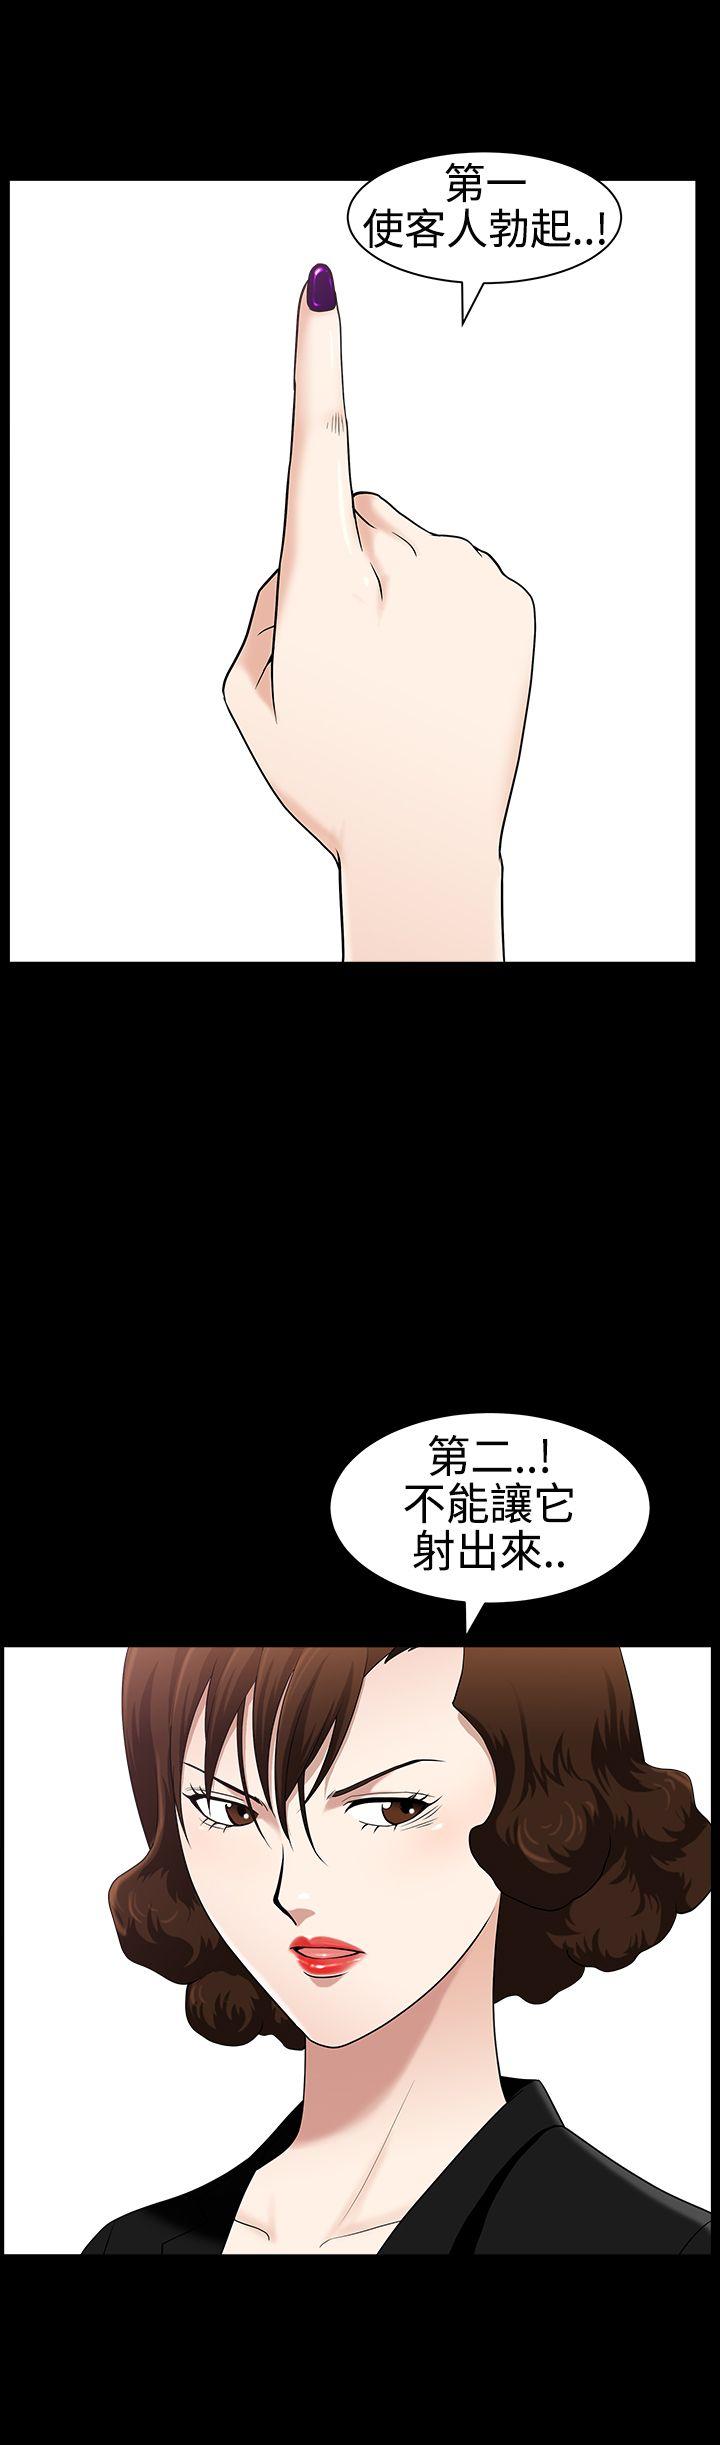 韩国污漫画 人妻性解放3:粗糙的手 第25话 5